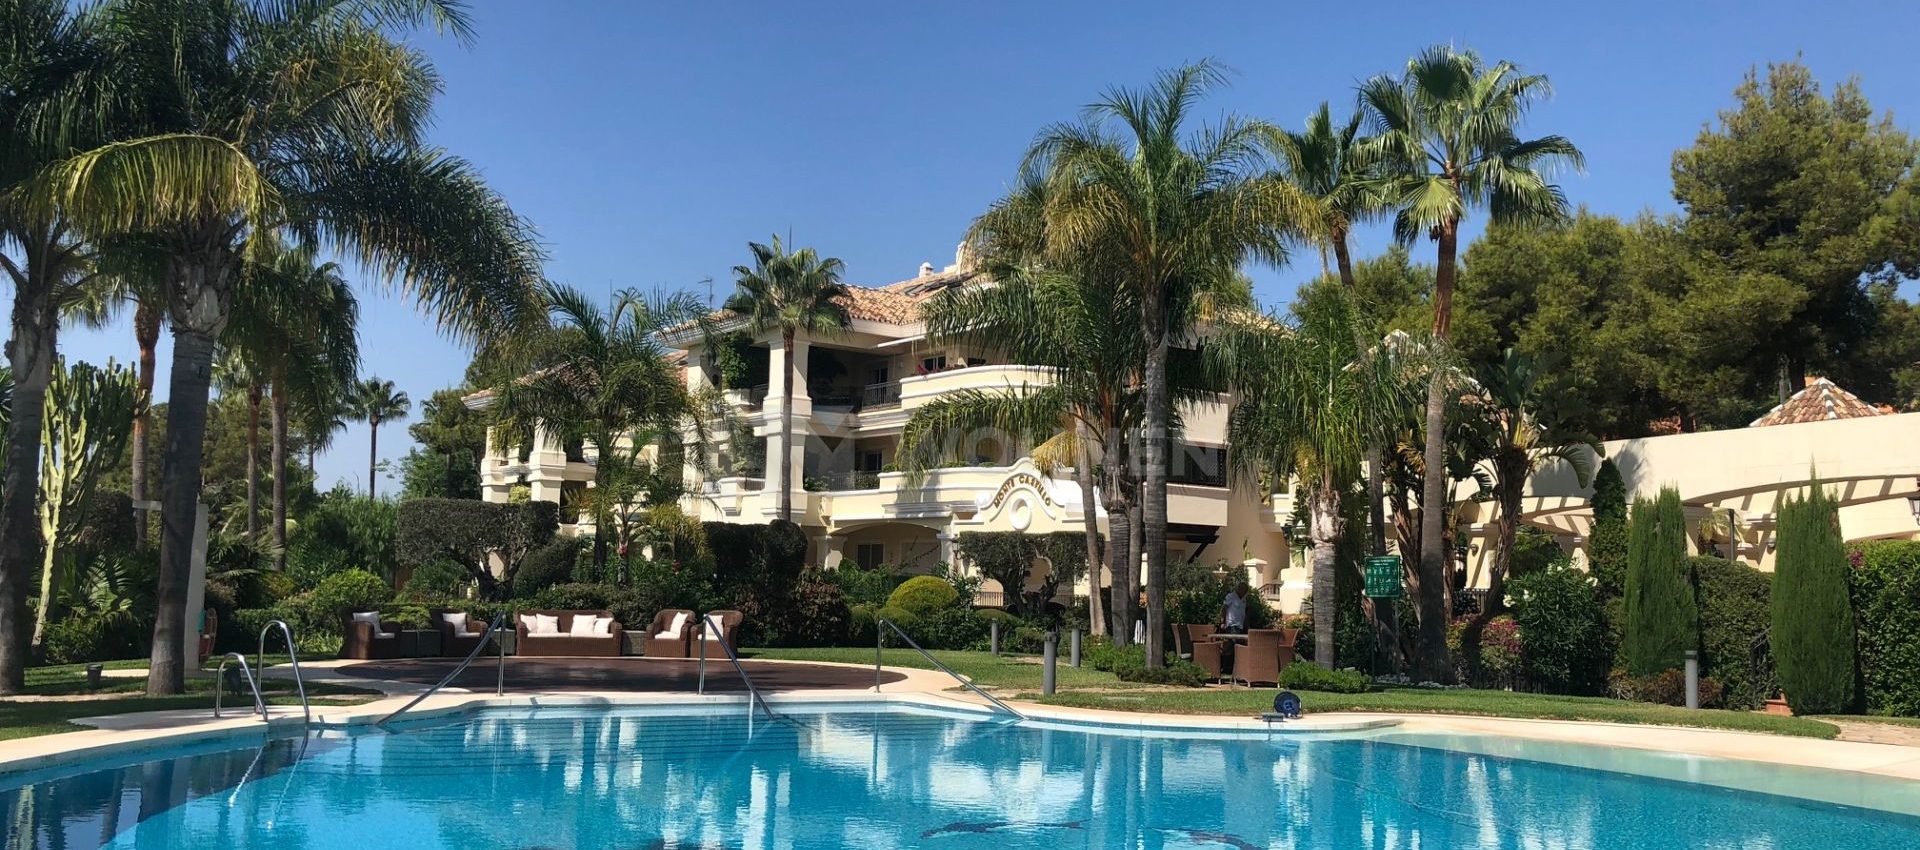 Elegante Wohnung in Altos Reales in Marbella mit Meerblick